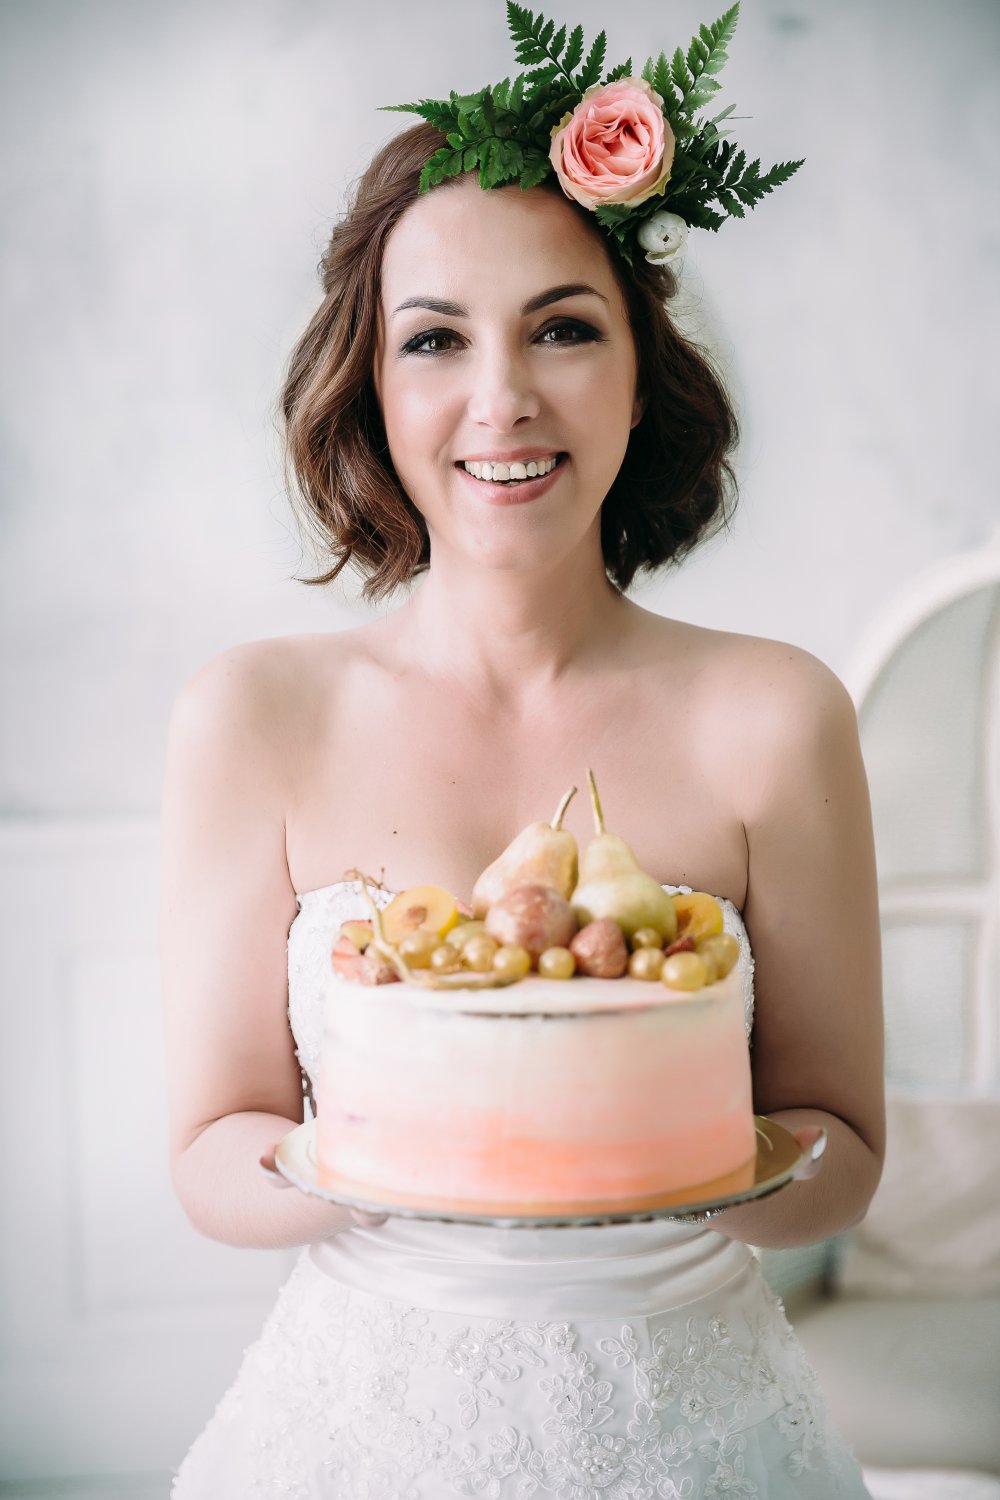 Наша прекрасная невеста Наталья, с не менее прекрасным тортиком от чудо кондитера! )